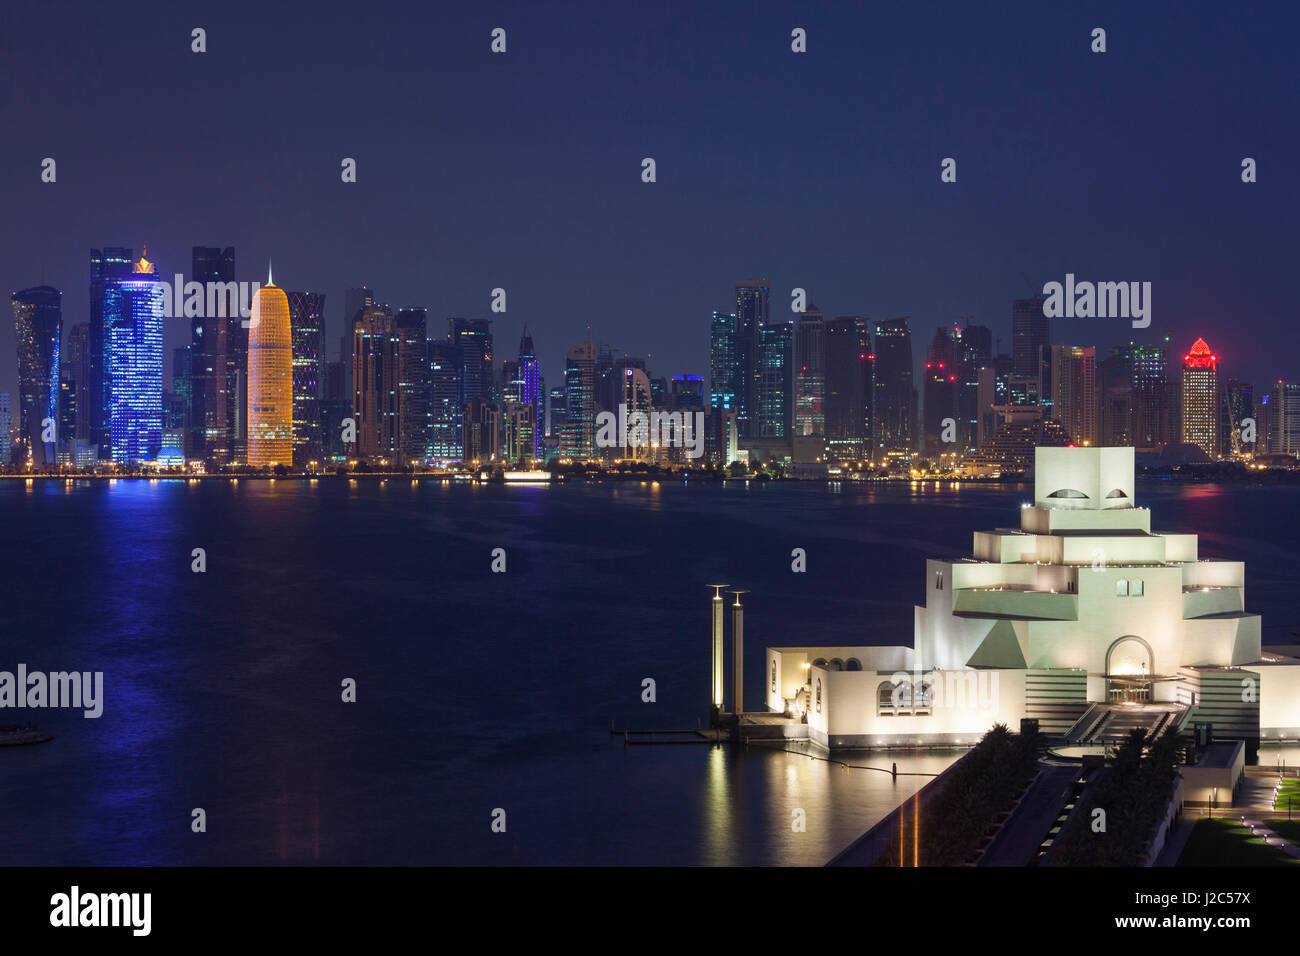 Qatar, Doha, le Musée d'Art Islamique, conçu par I.M. Pei, elevated view, dusk Banque D'Images